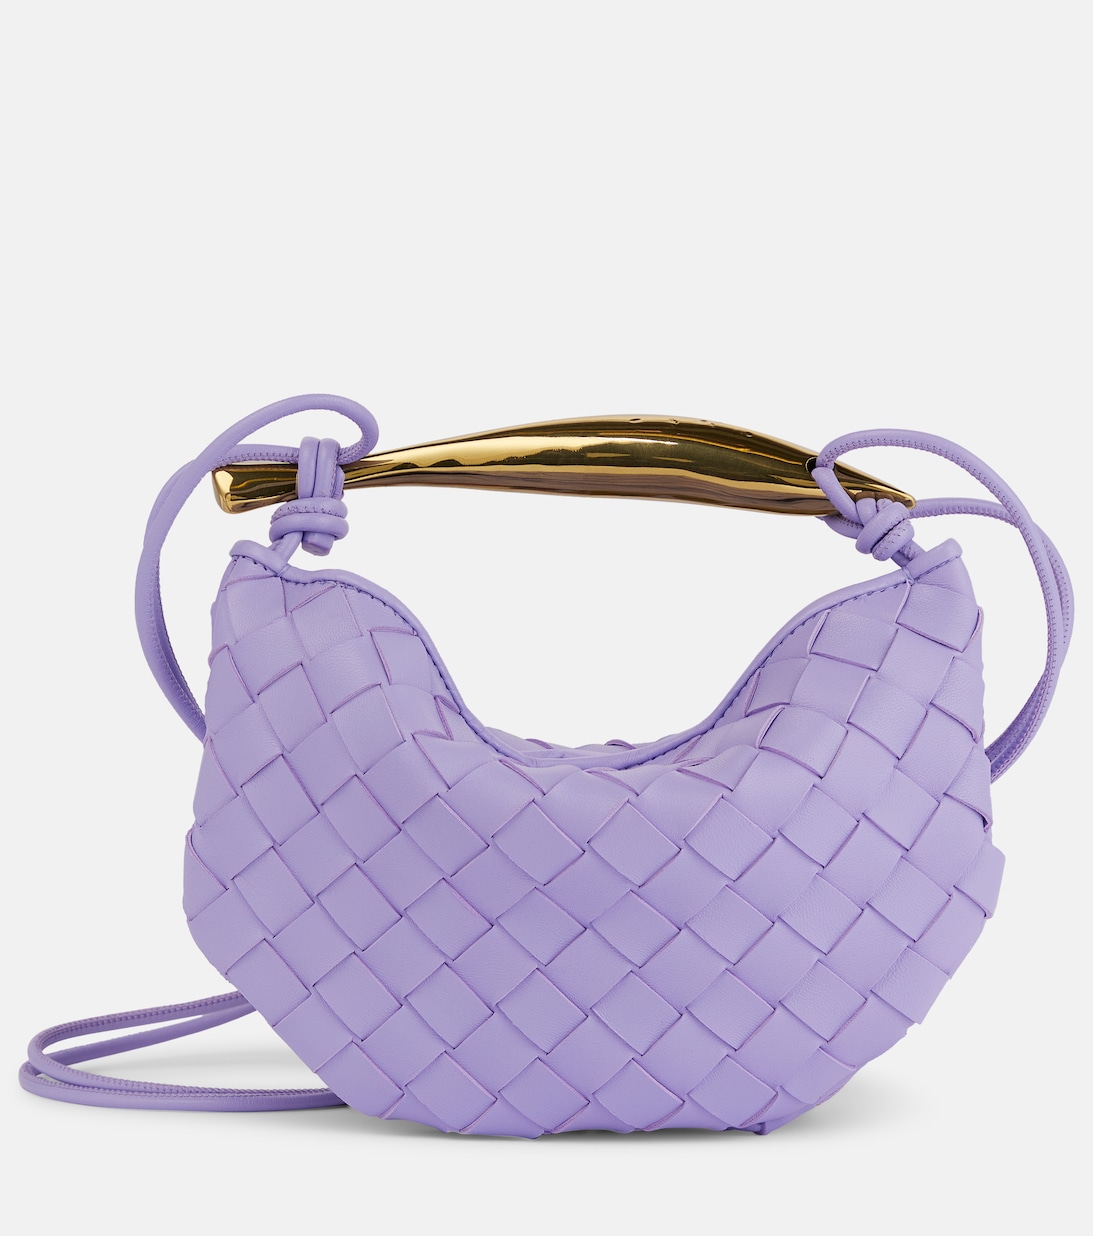 Кожаная сумка через плечо Sardine Mini Bottega Veneta, фиолетовый сумка кросс боди bottega veneta mini sardine фиолетовый